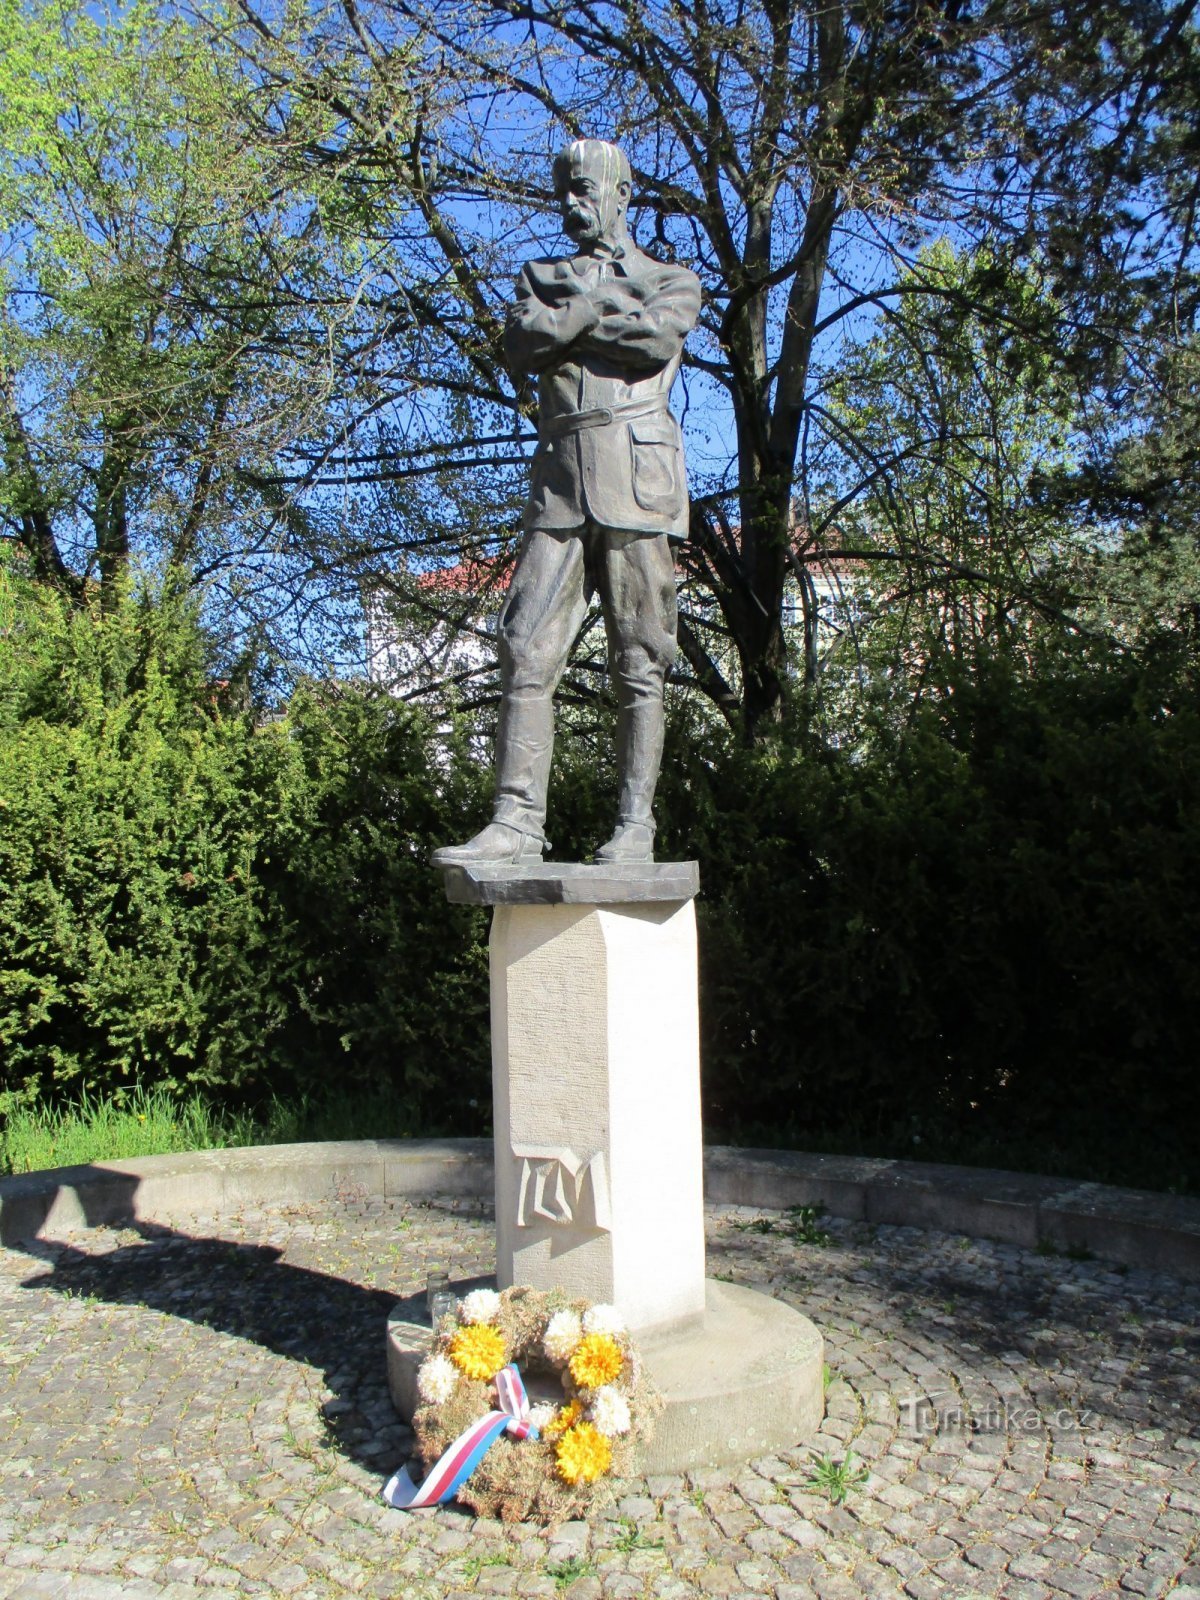 Pomnik TG Masaryka (Jaroměř, 22.4.2020)